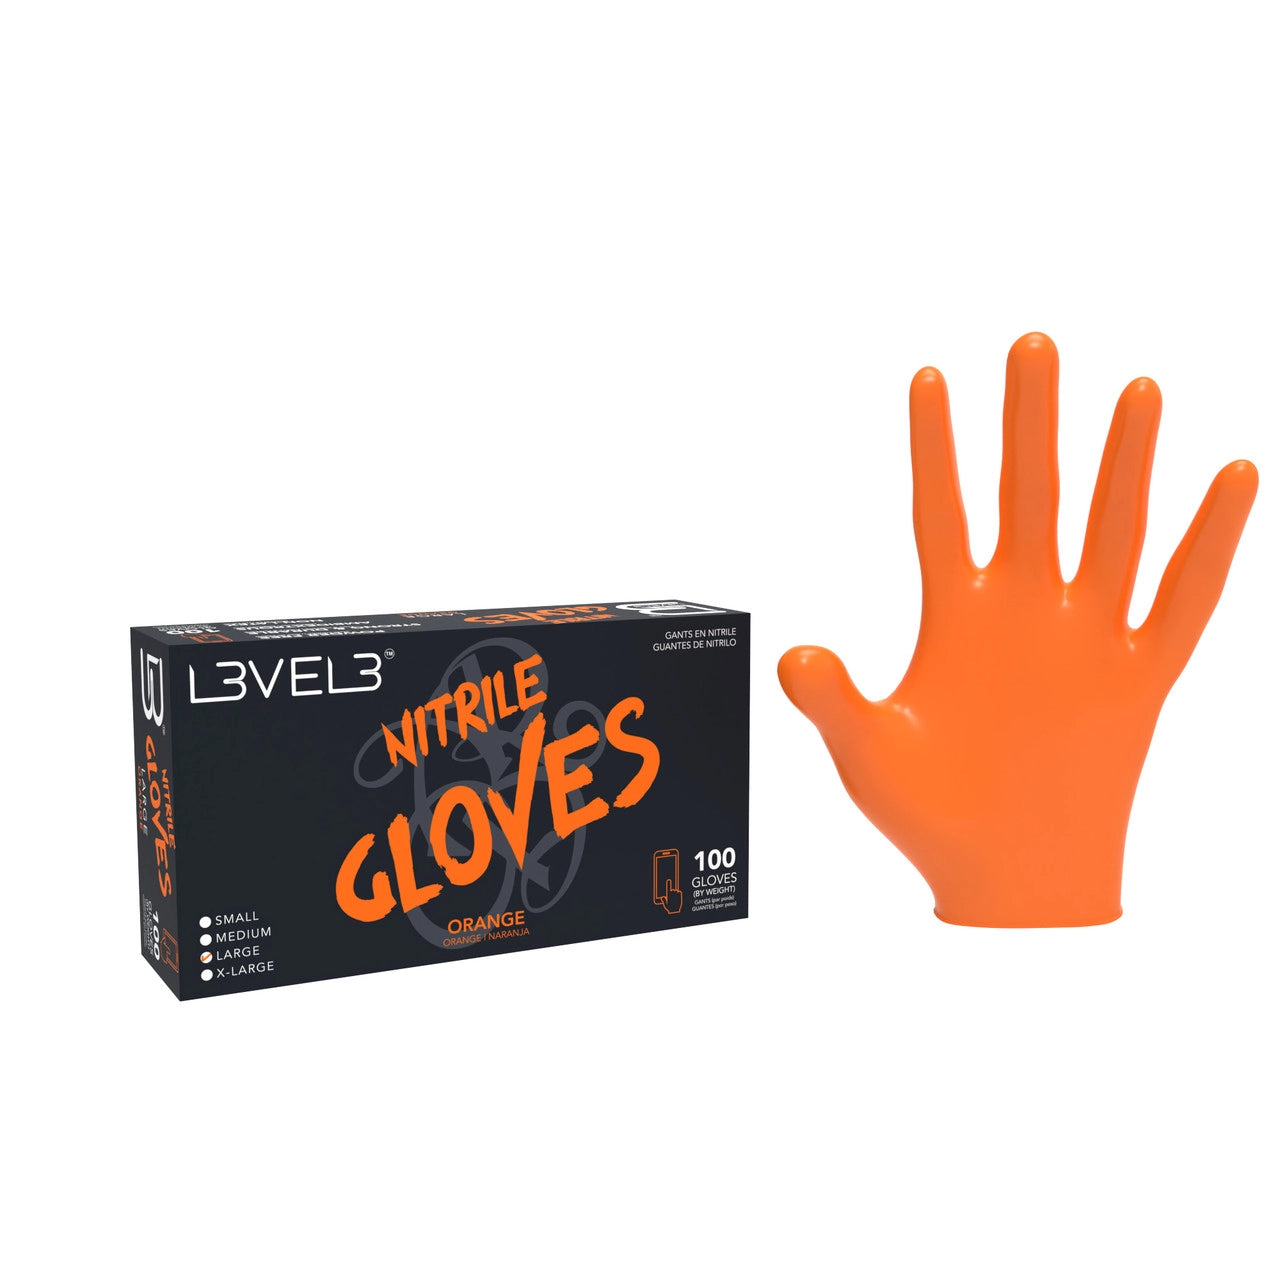 Level 3 Nitrile Gloves in Orange